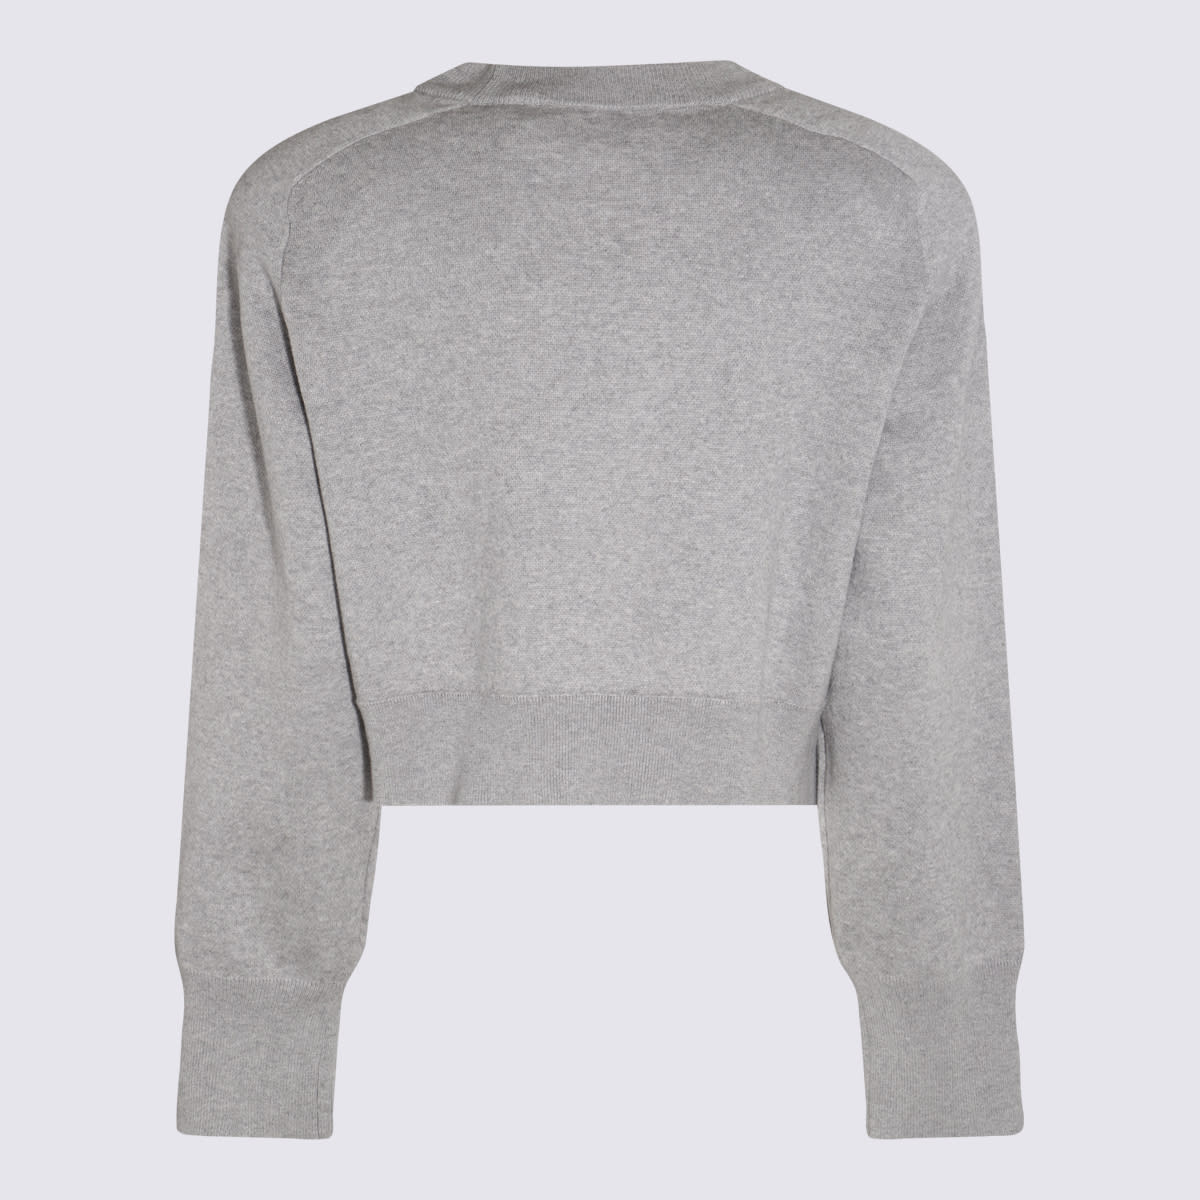 Shop Rotate Birger Christensen Lunar Rock Cotton And Cashmere Blend Sweater